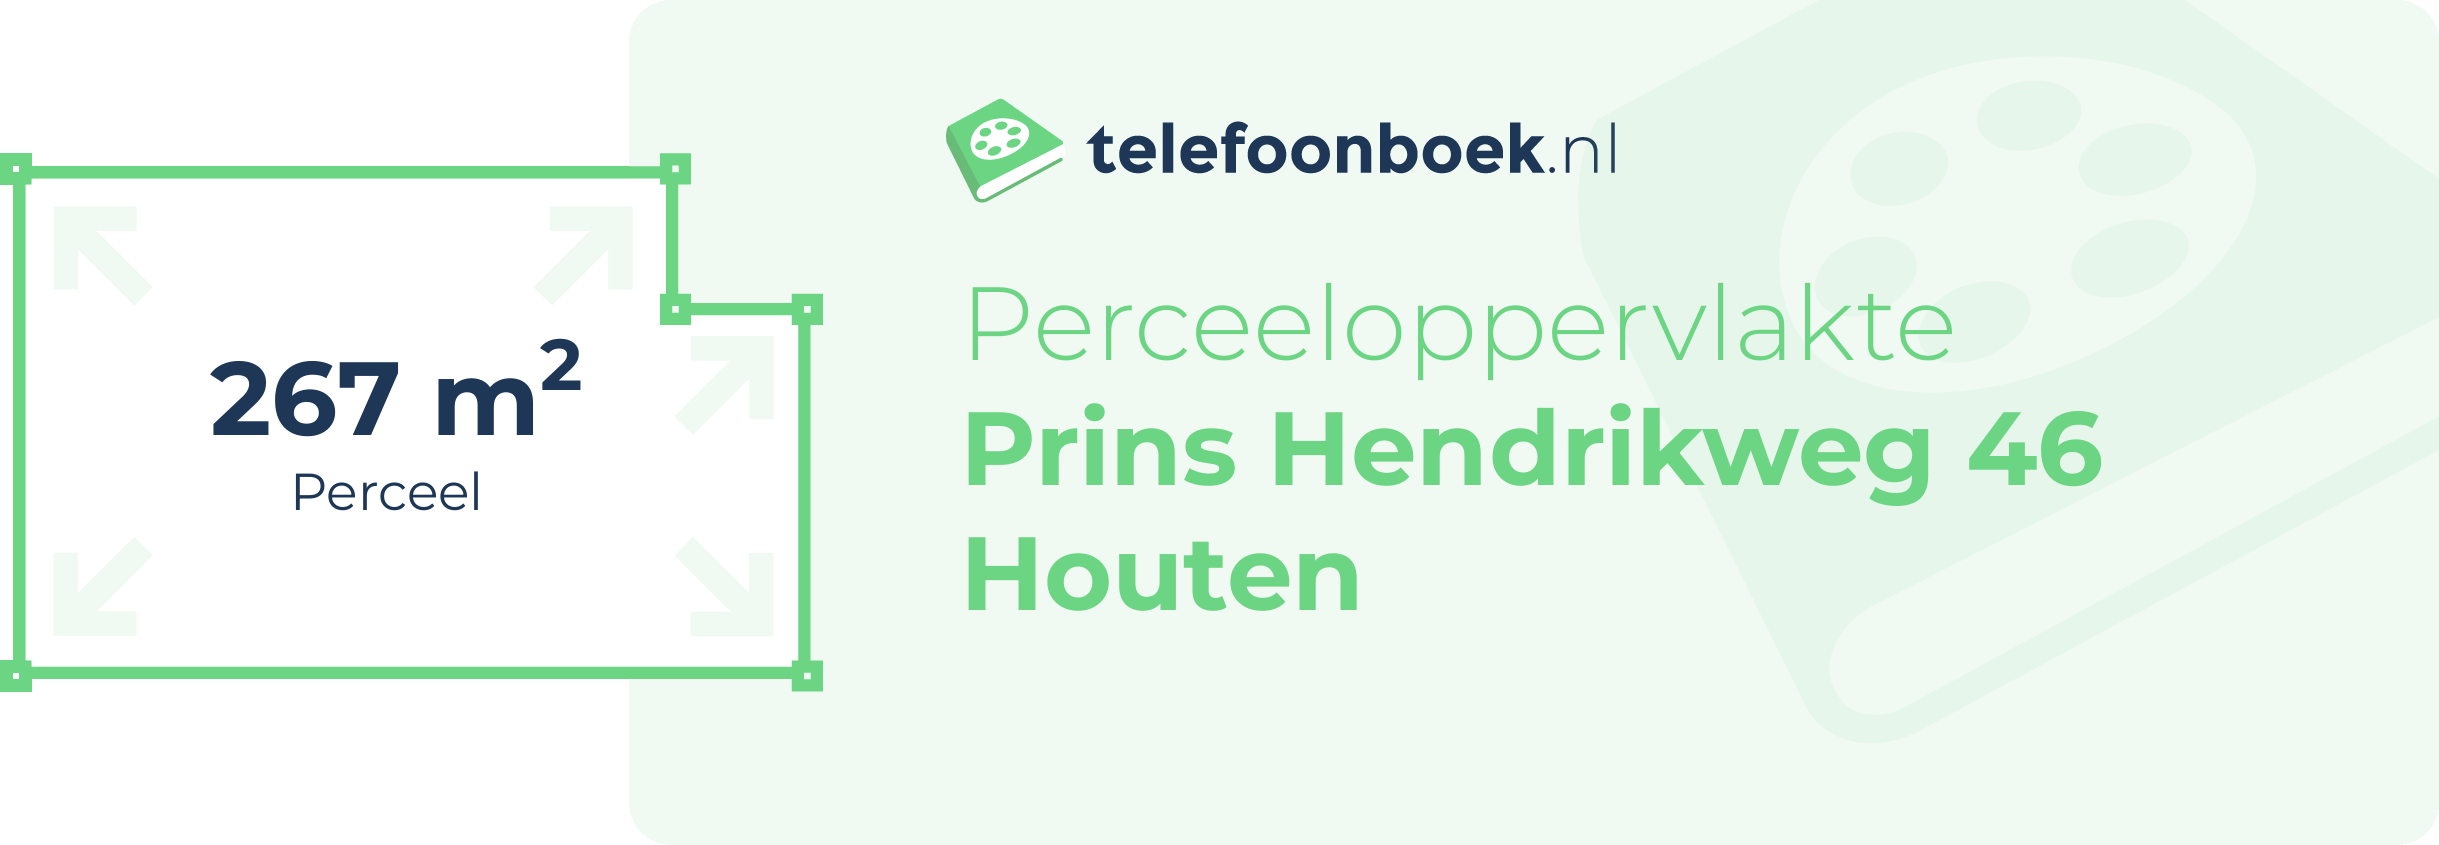 Perceeloppervlakte Prins Hendrikweg 46 Houten